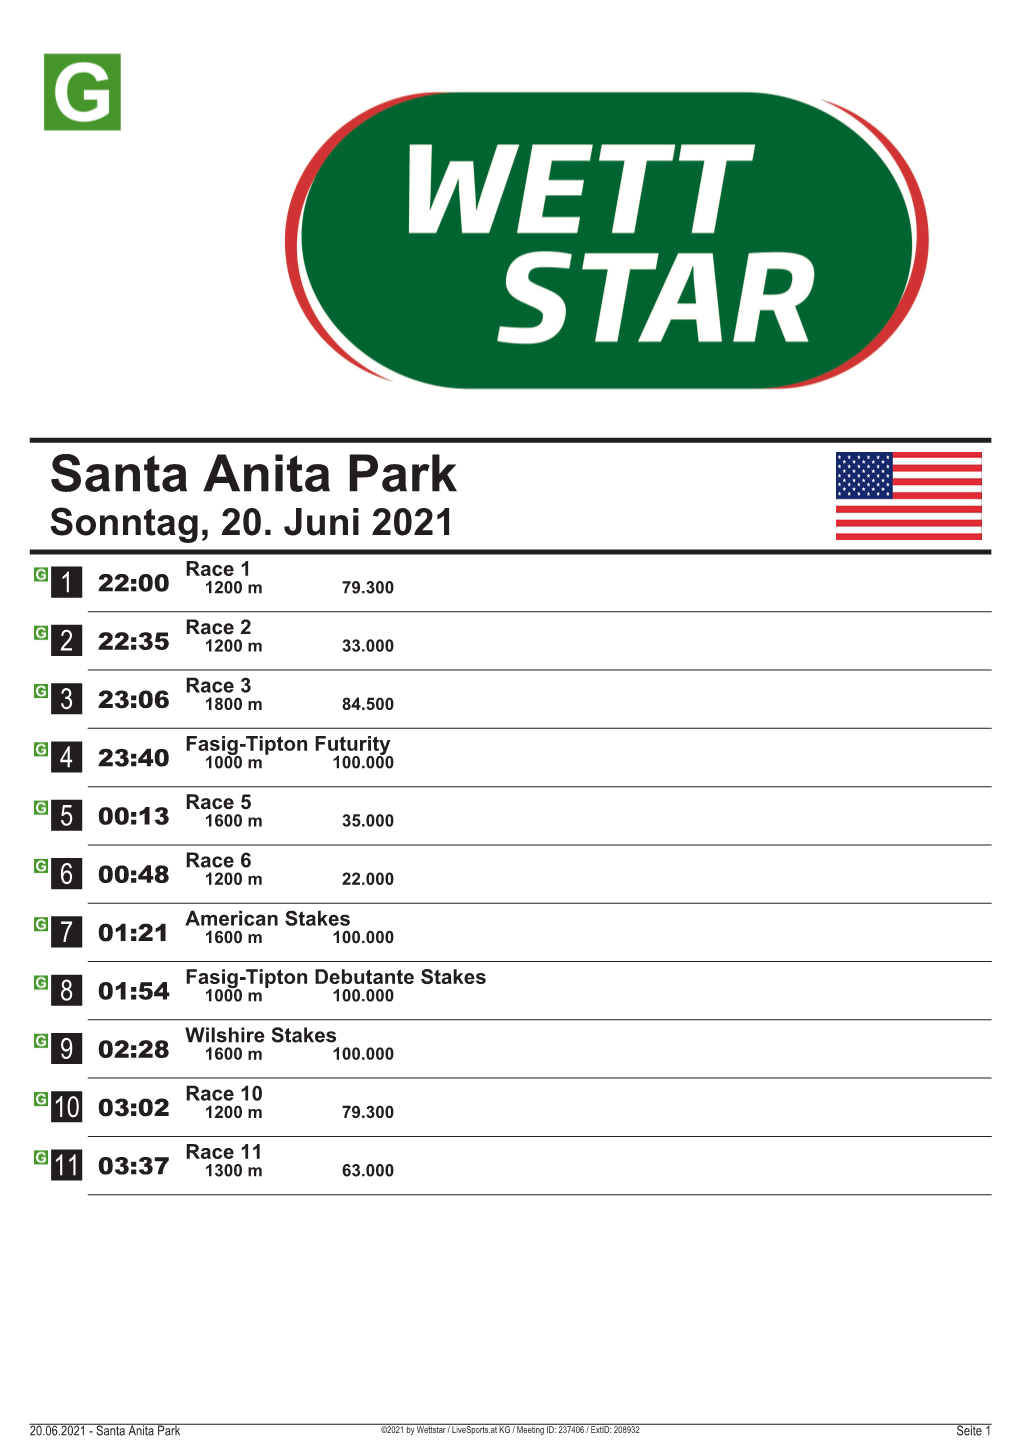 Santa Anita Park Sonntag, 20